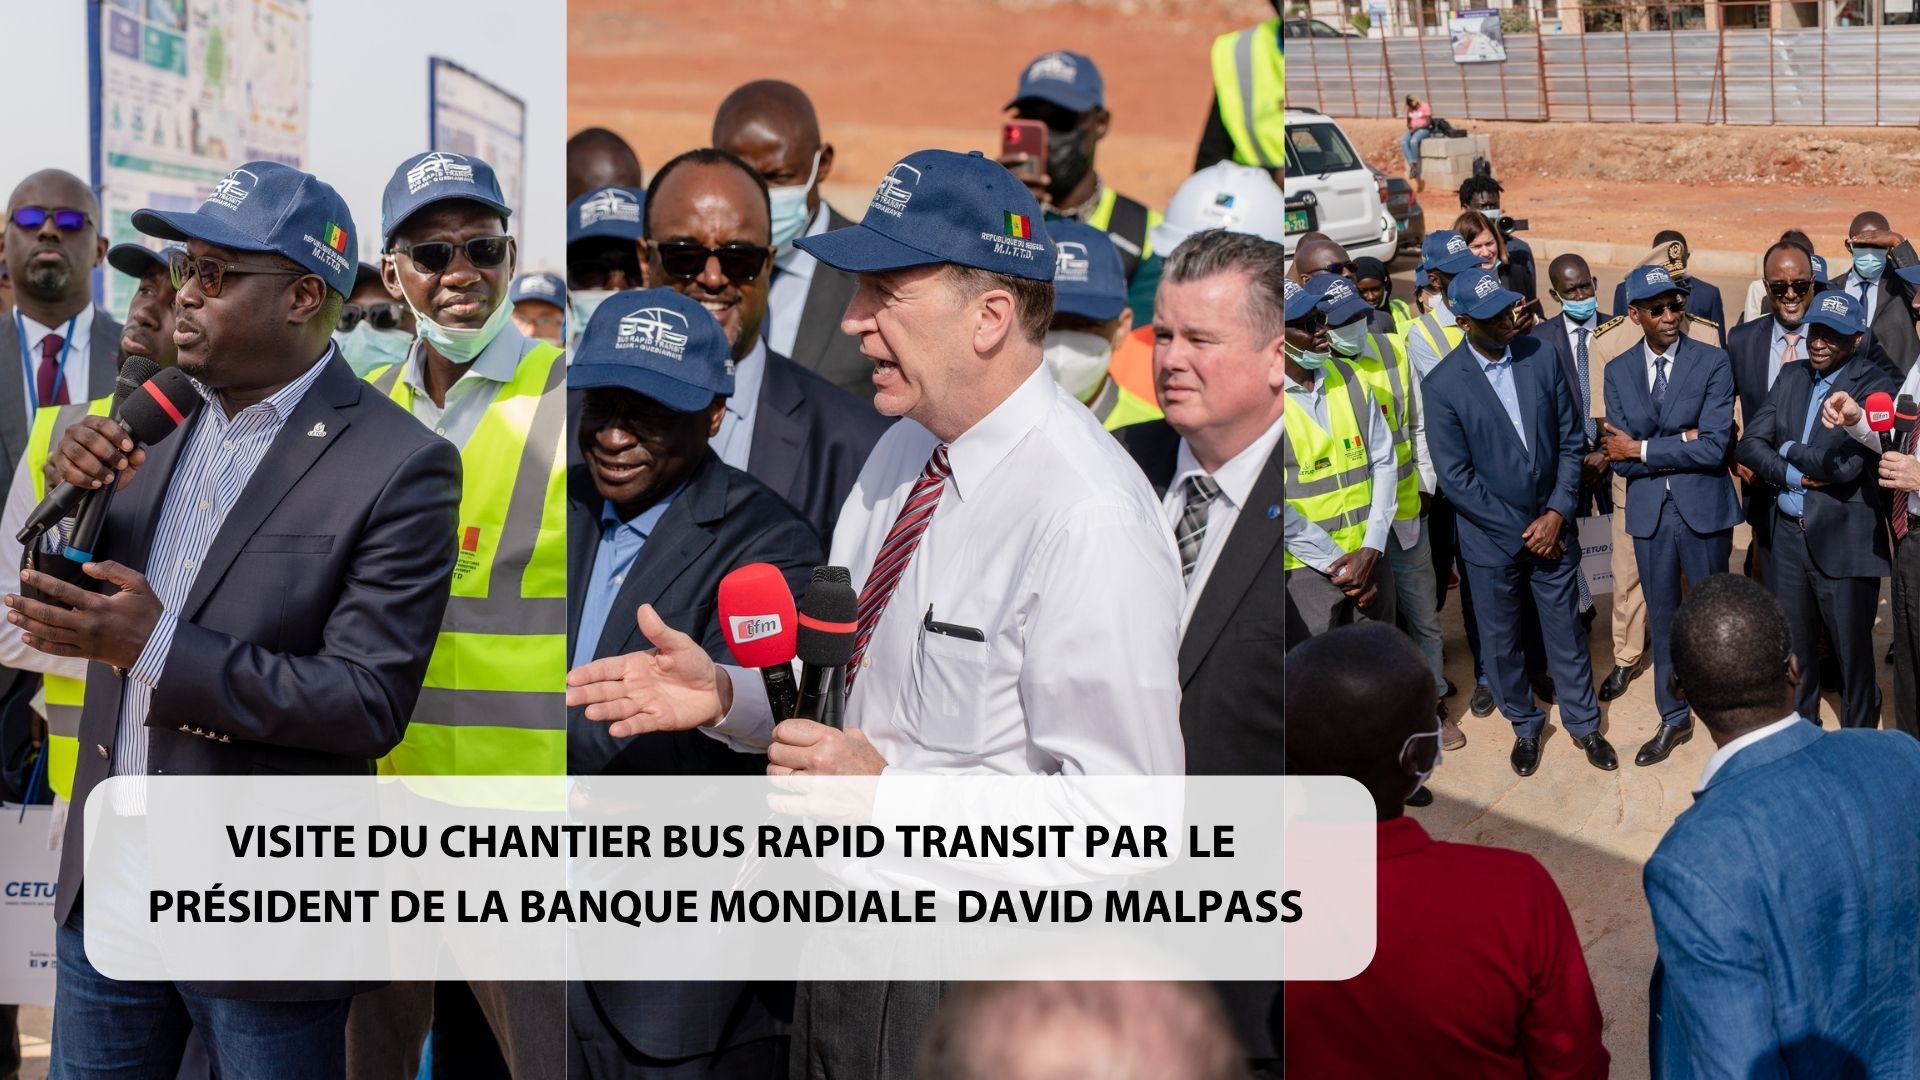 Visite du chantier Bus Rapid Transit de Dakar par le Président de la Banque mondiale David Malpass